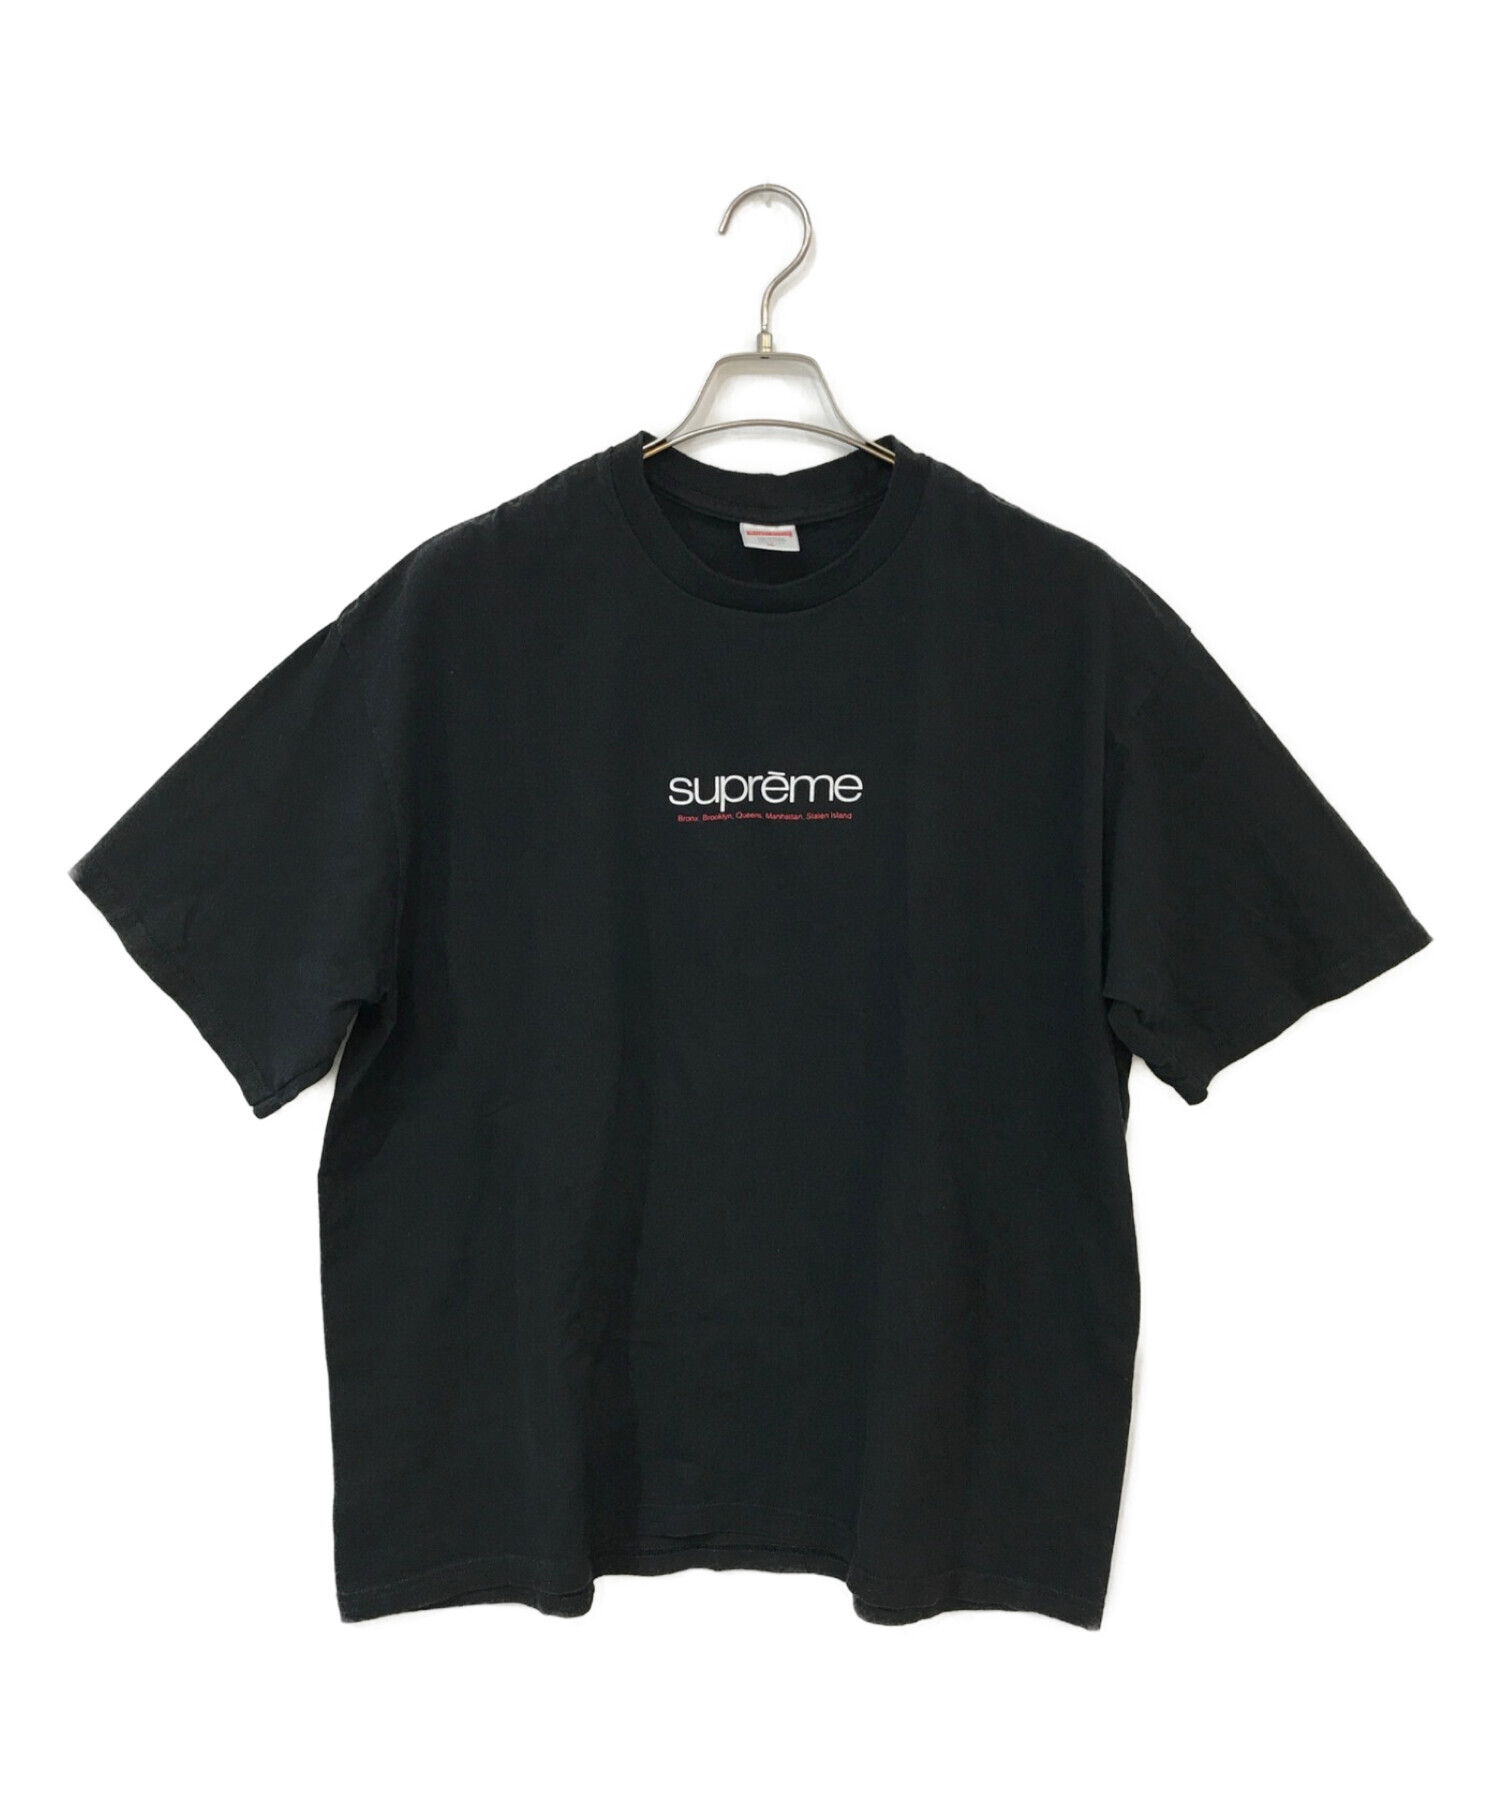 新品 XL supreme Five Boroughs Tee ブラック - Tシャツ/カットソー